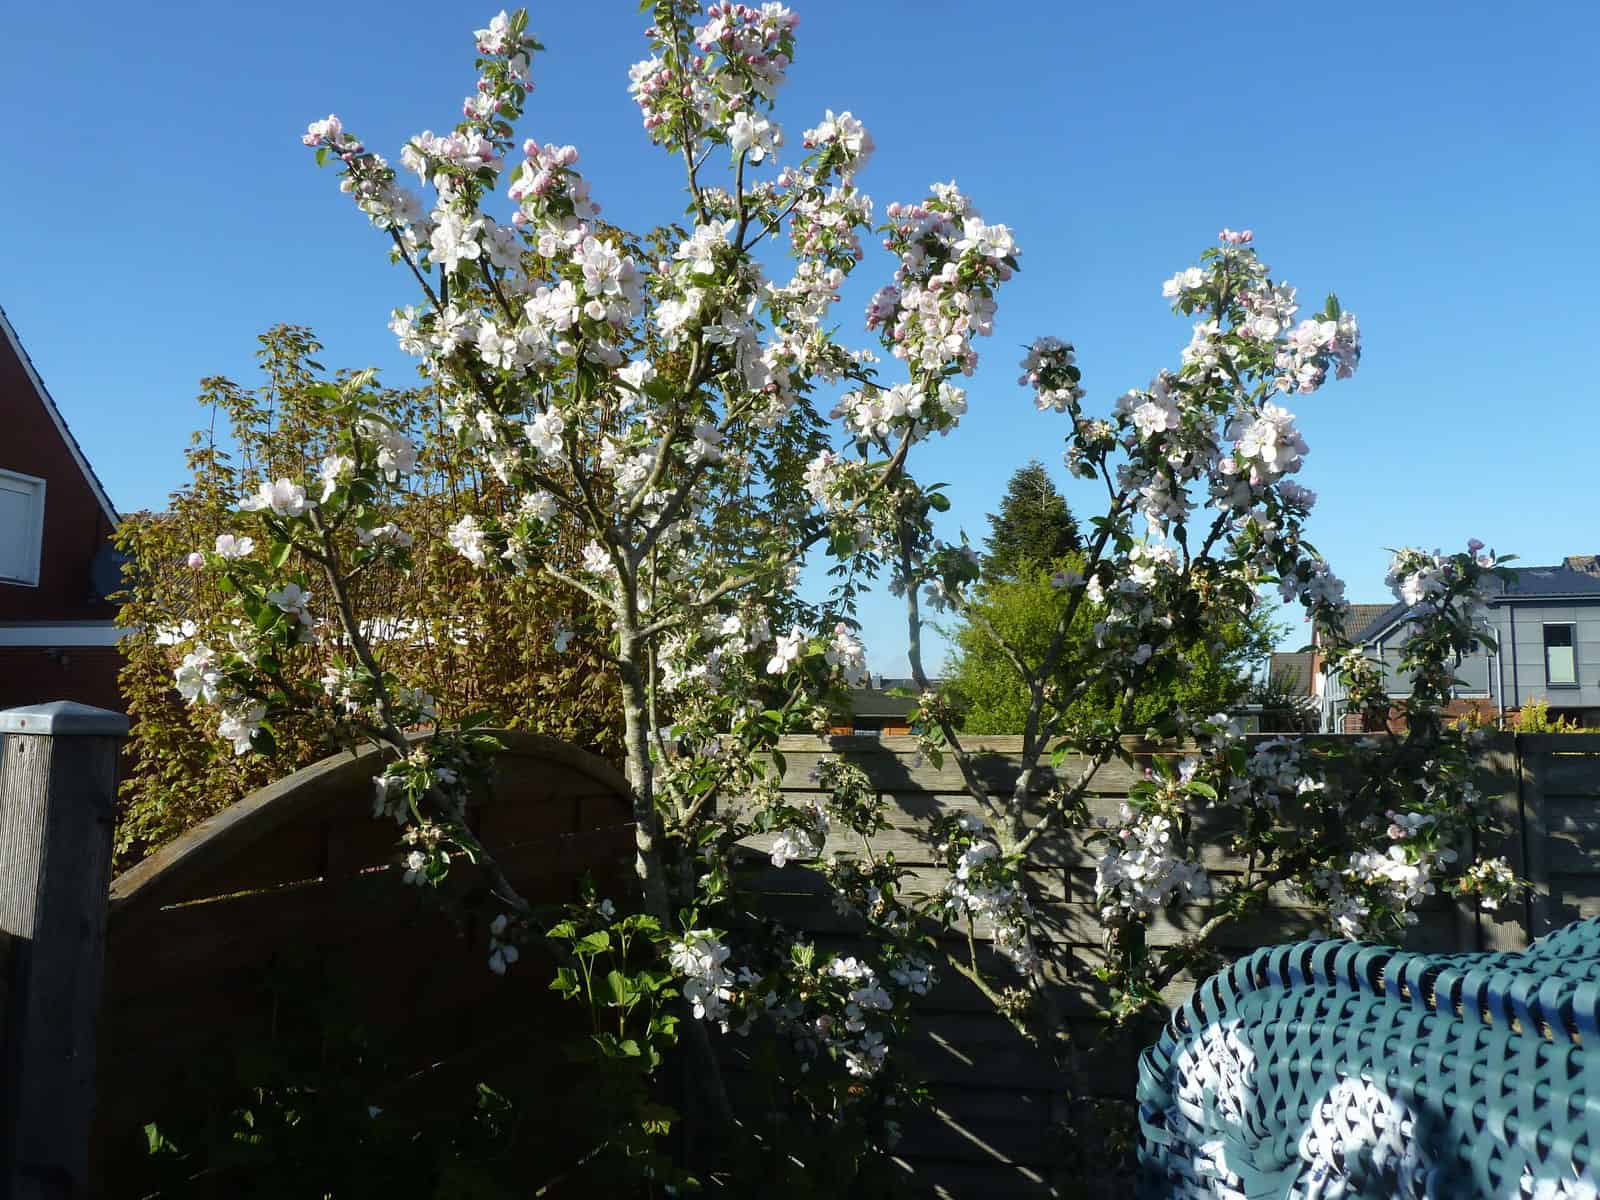 Fotos von den Ferienwohnungen Kolks Huus in Neuharlingersiel zeigen den liebevoll angelegten Garten mit den vielen Möglichkeiten zur Freizeitgestaltung und mit Obstbäumen für schöne Ferien an der Nordsee